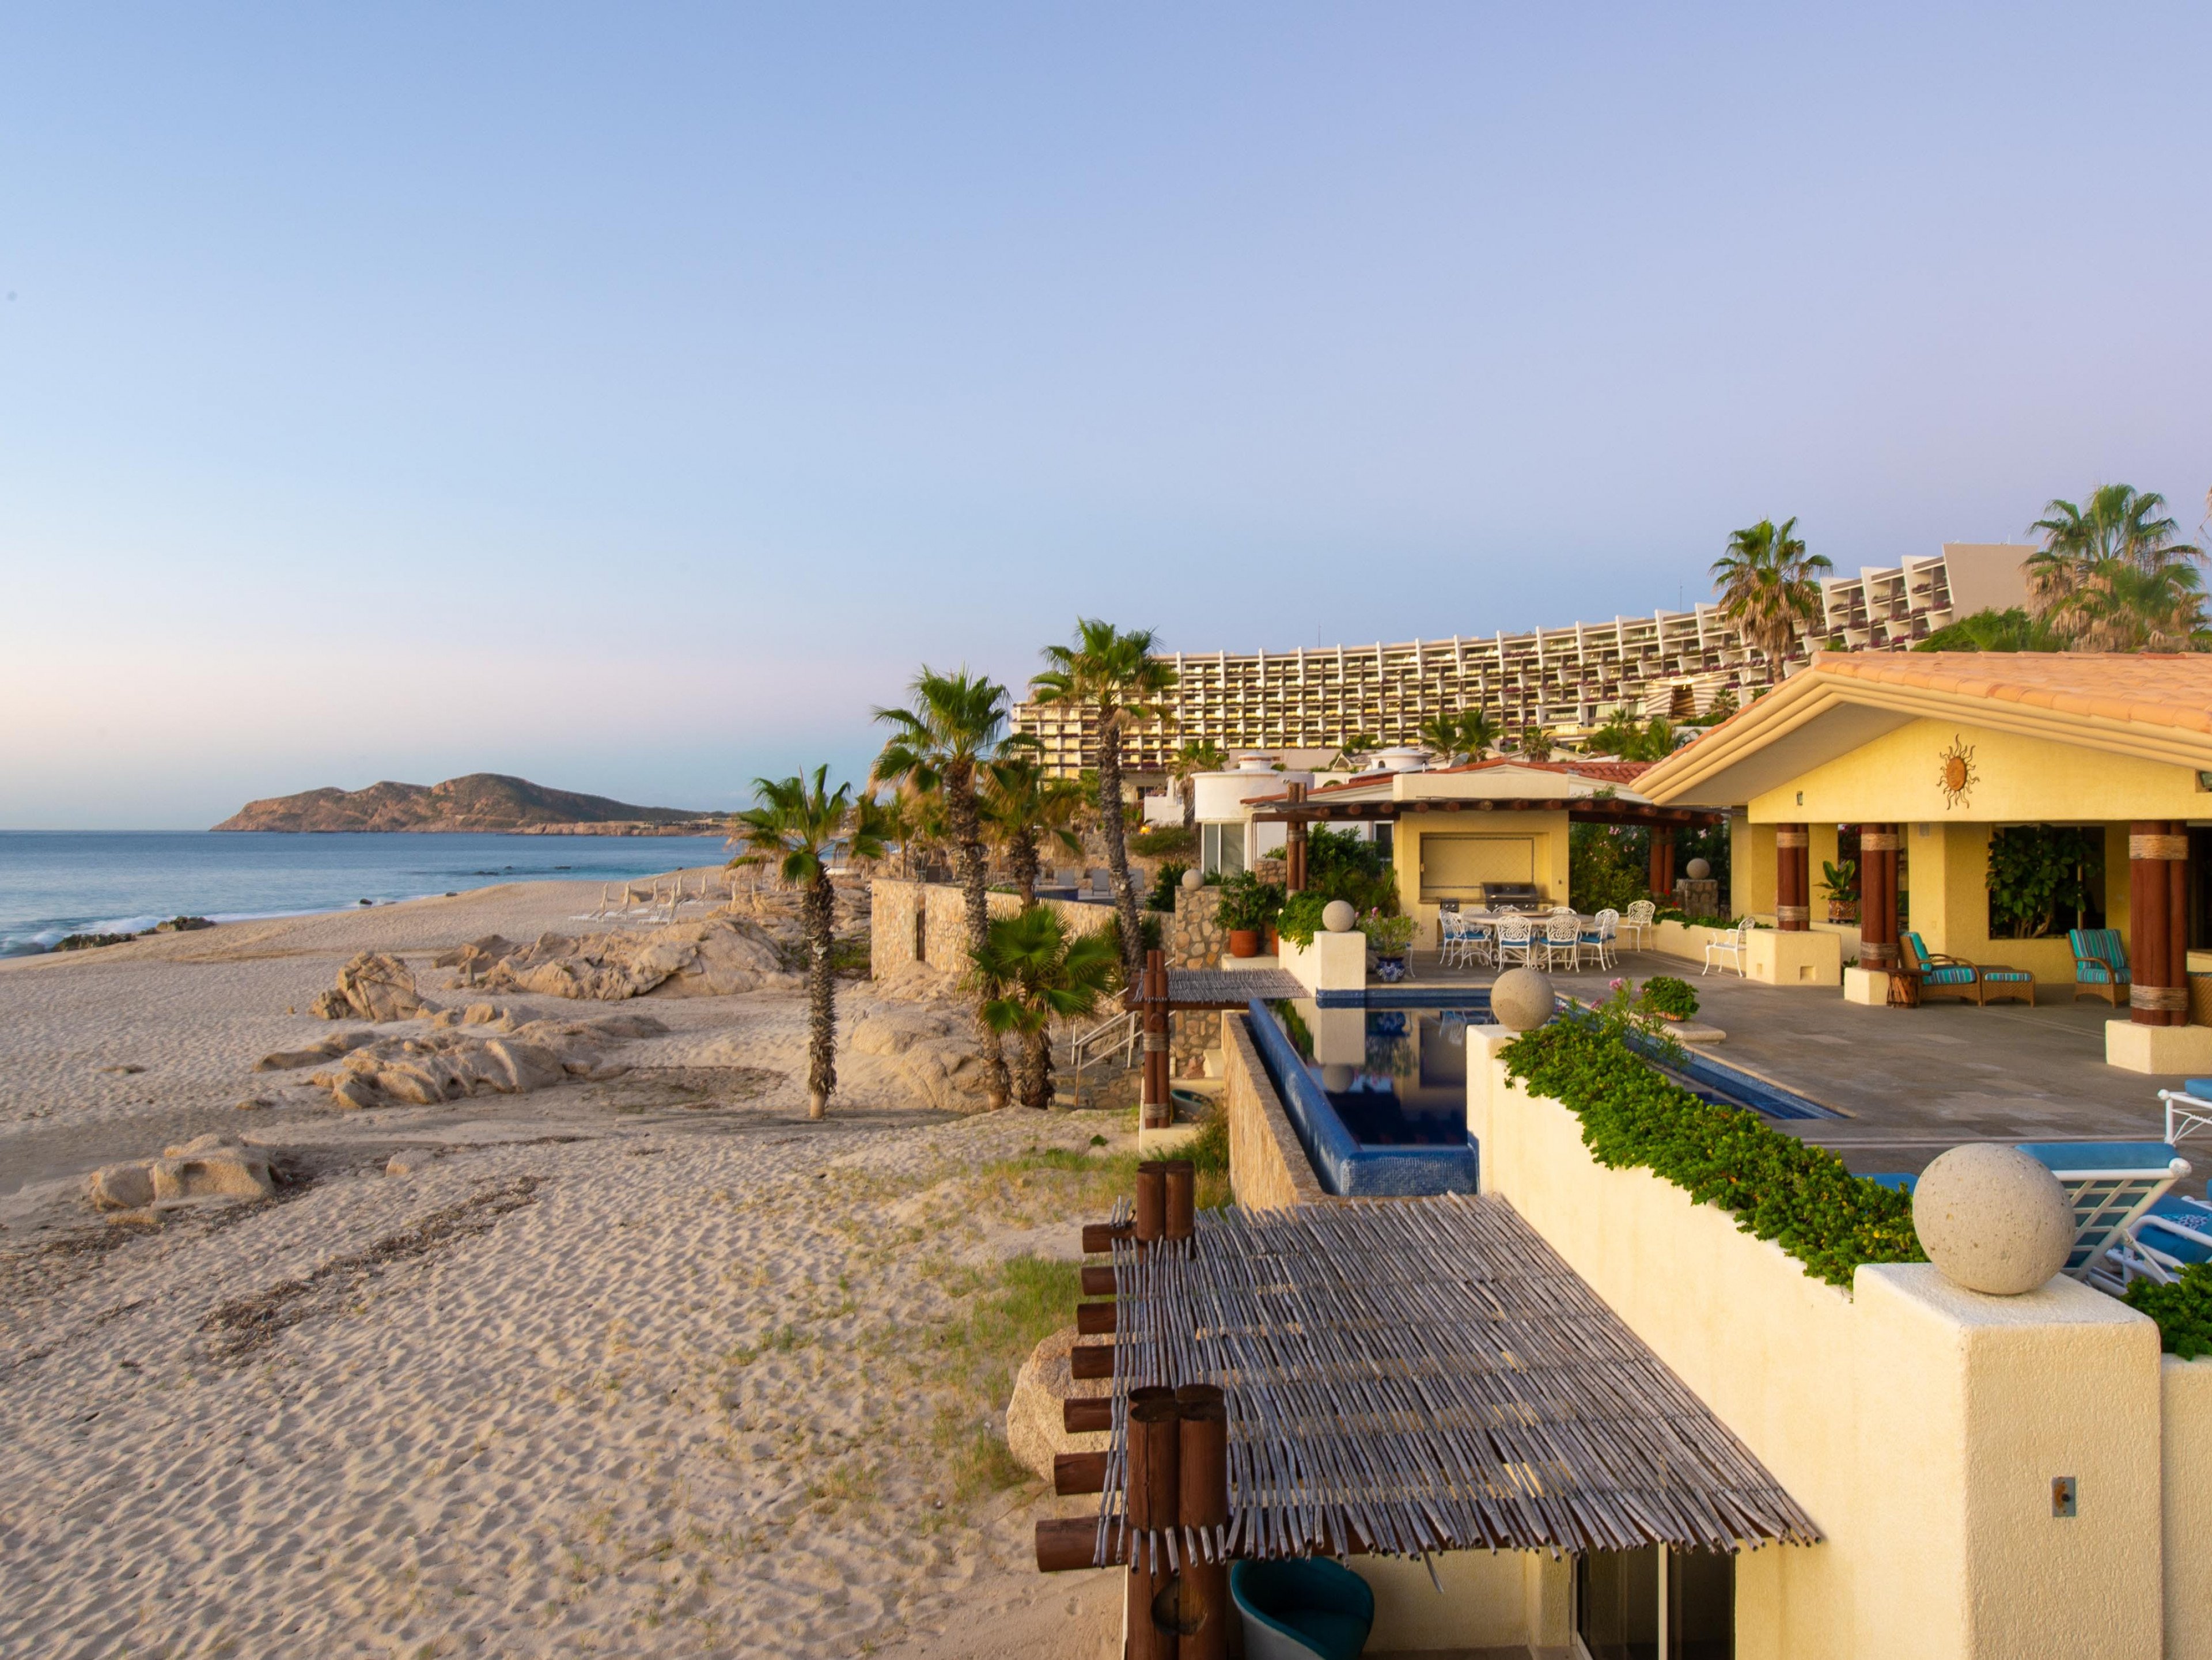 Villa De La Playa Beach rentals in Cabo San Lucas Mexico